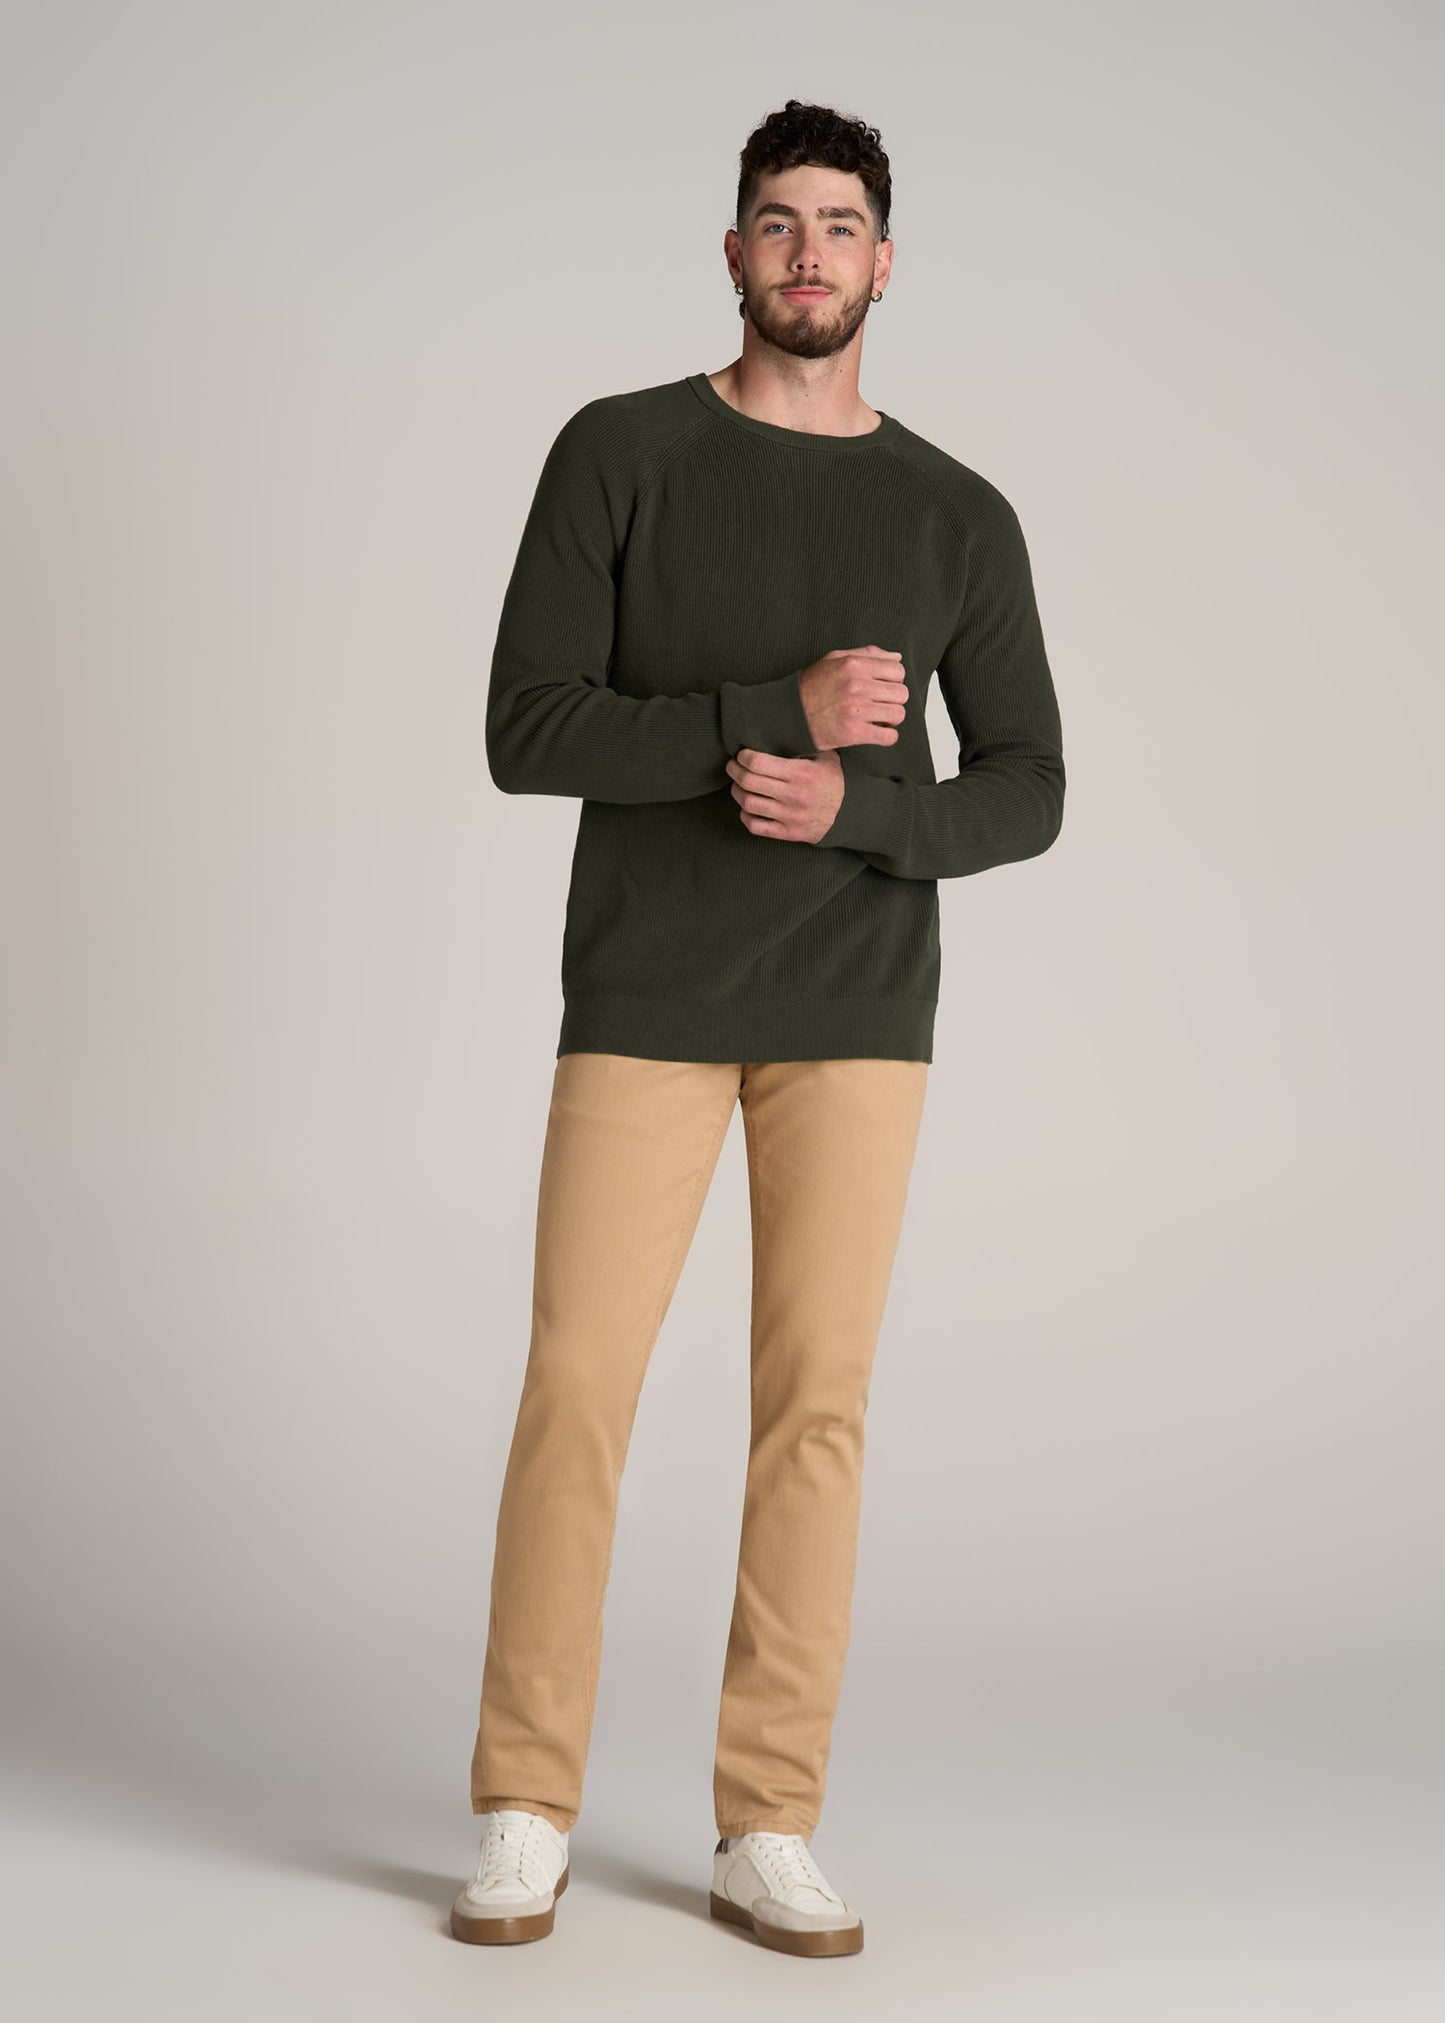 American-Tall-Men-Textured-Knit-Sweater-Dark-Olive-Green-full